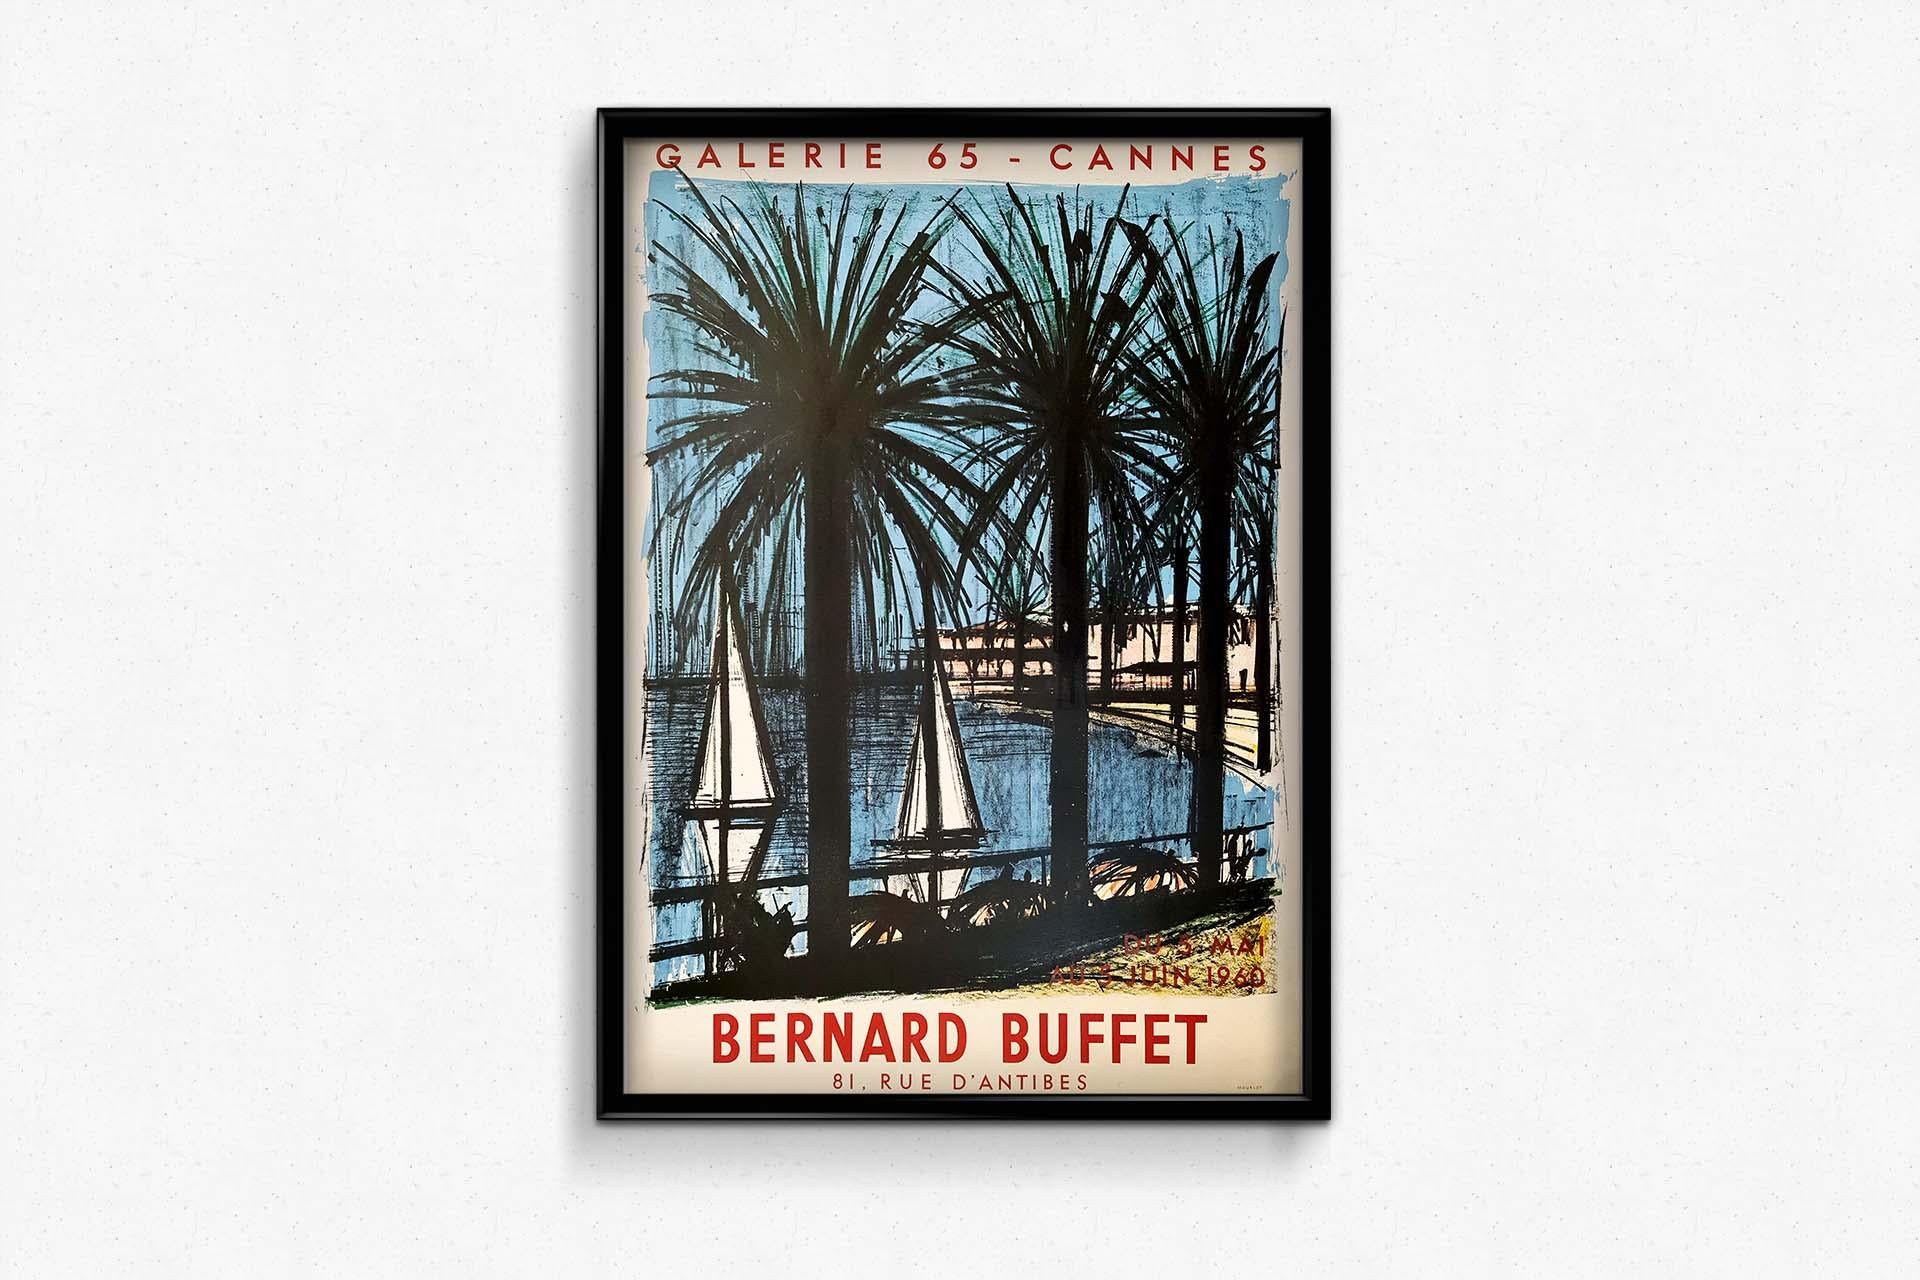 Bernard Buffet's 